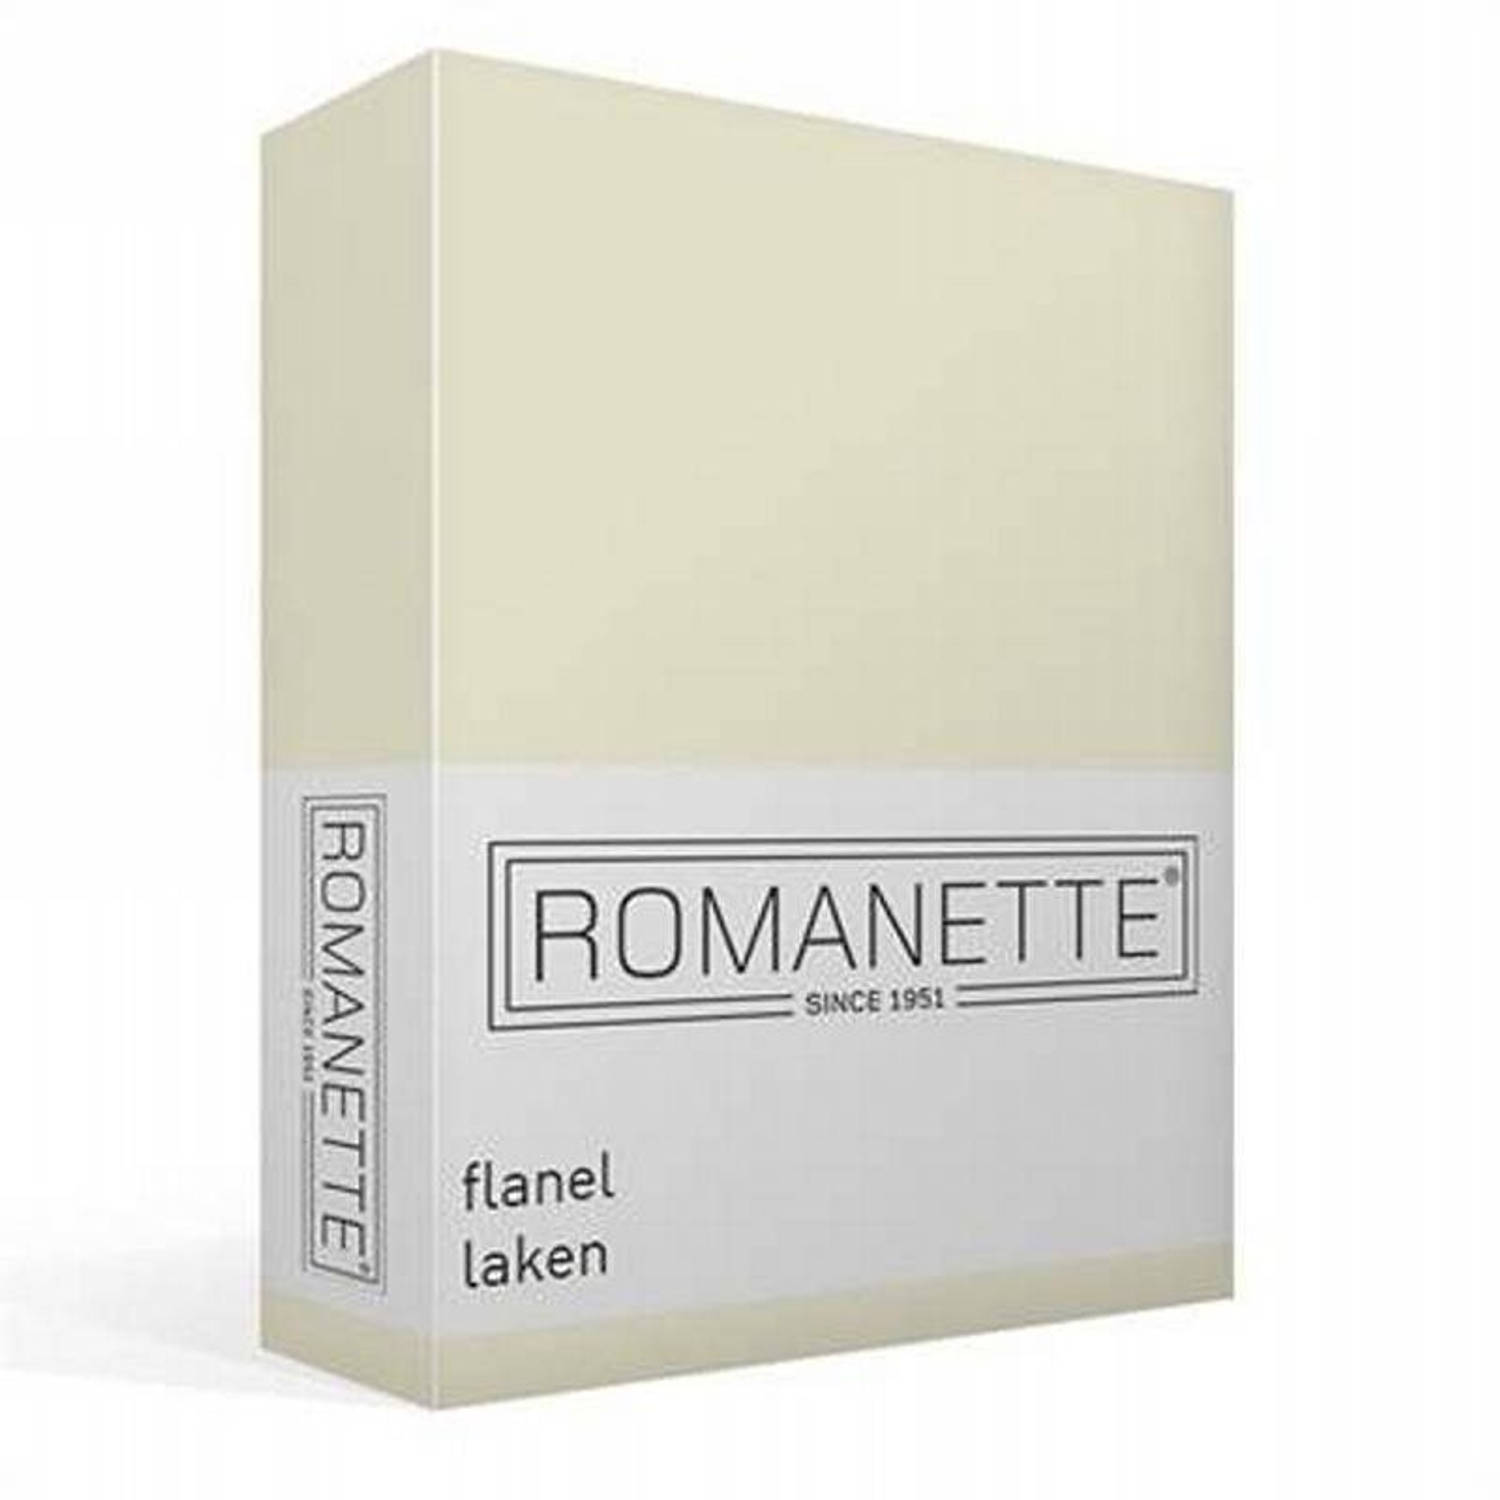 Romanette Flanellen Laken - 100% Geruwde Flanel-katoen - 2-persoons (200x260 Cm) - Ivoor - Wit